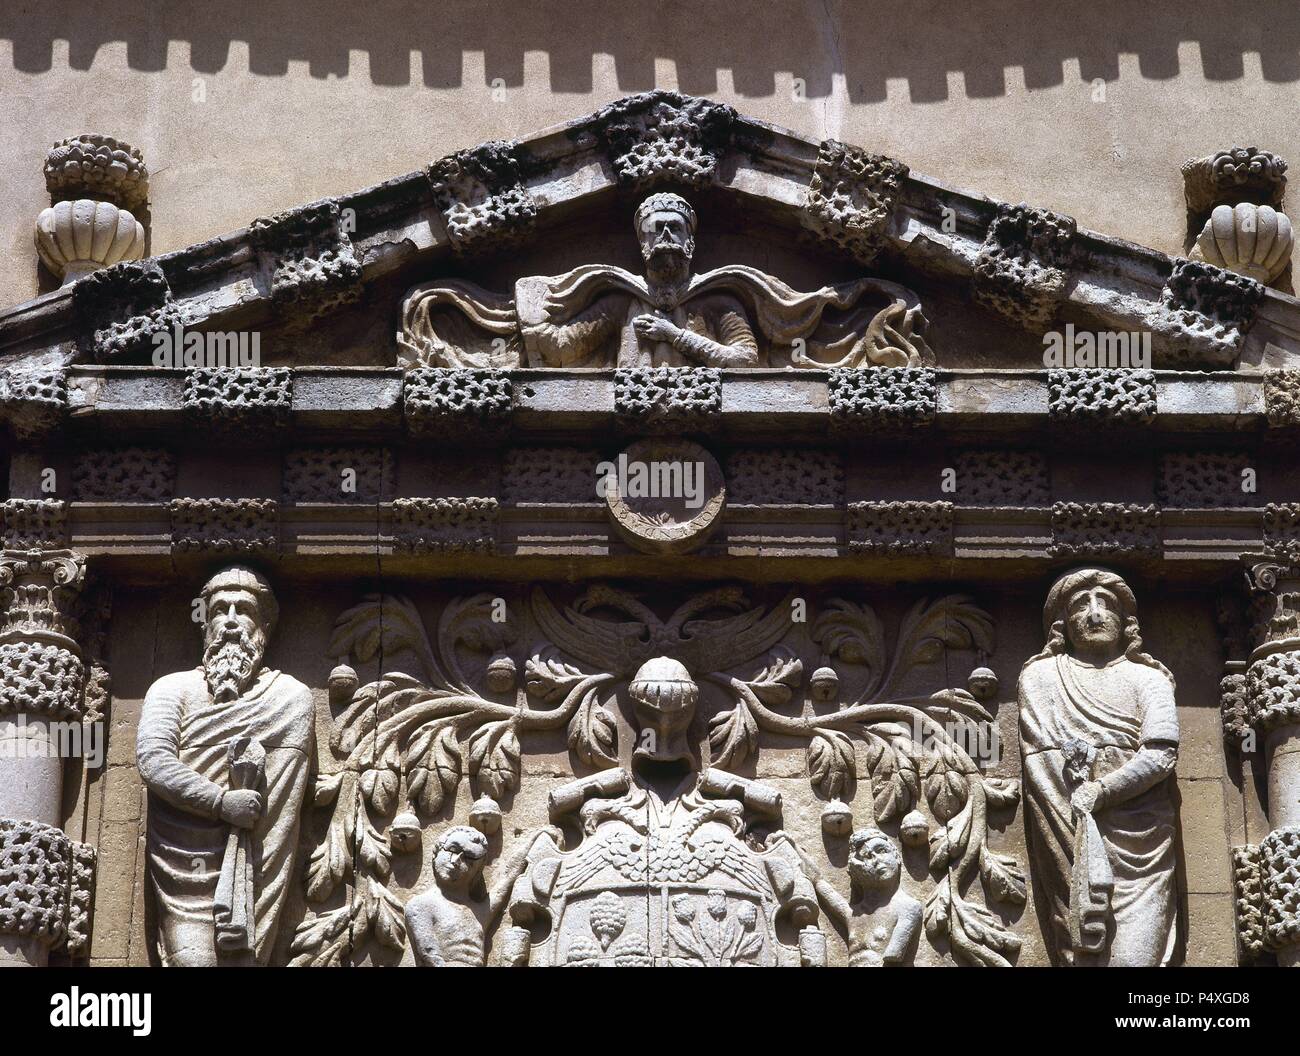 ARTE BARROCO. ESPAÑA. CASA GRANDE O PALACIO DE LOS CONDES DE CIRAT. Detalle  de las esculturas que decoran la parte superior de la portada, y el  TIMPANO. Tiene gran influencia manierista. ALMANSA.